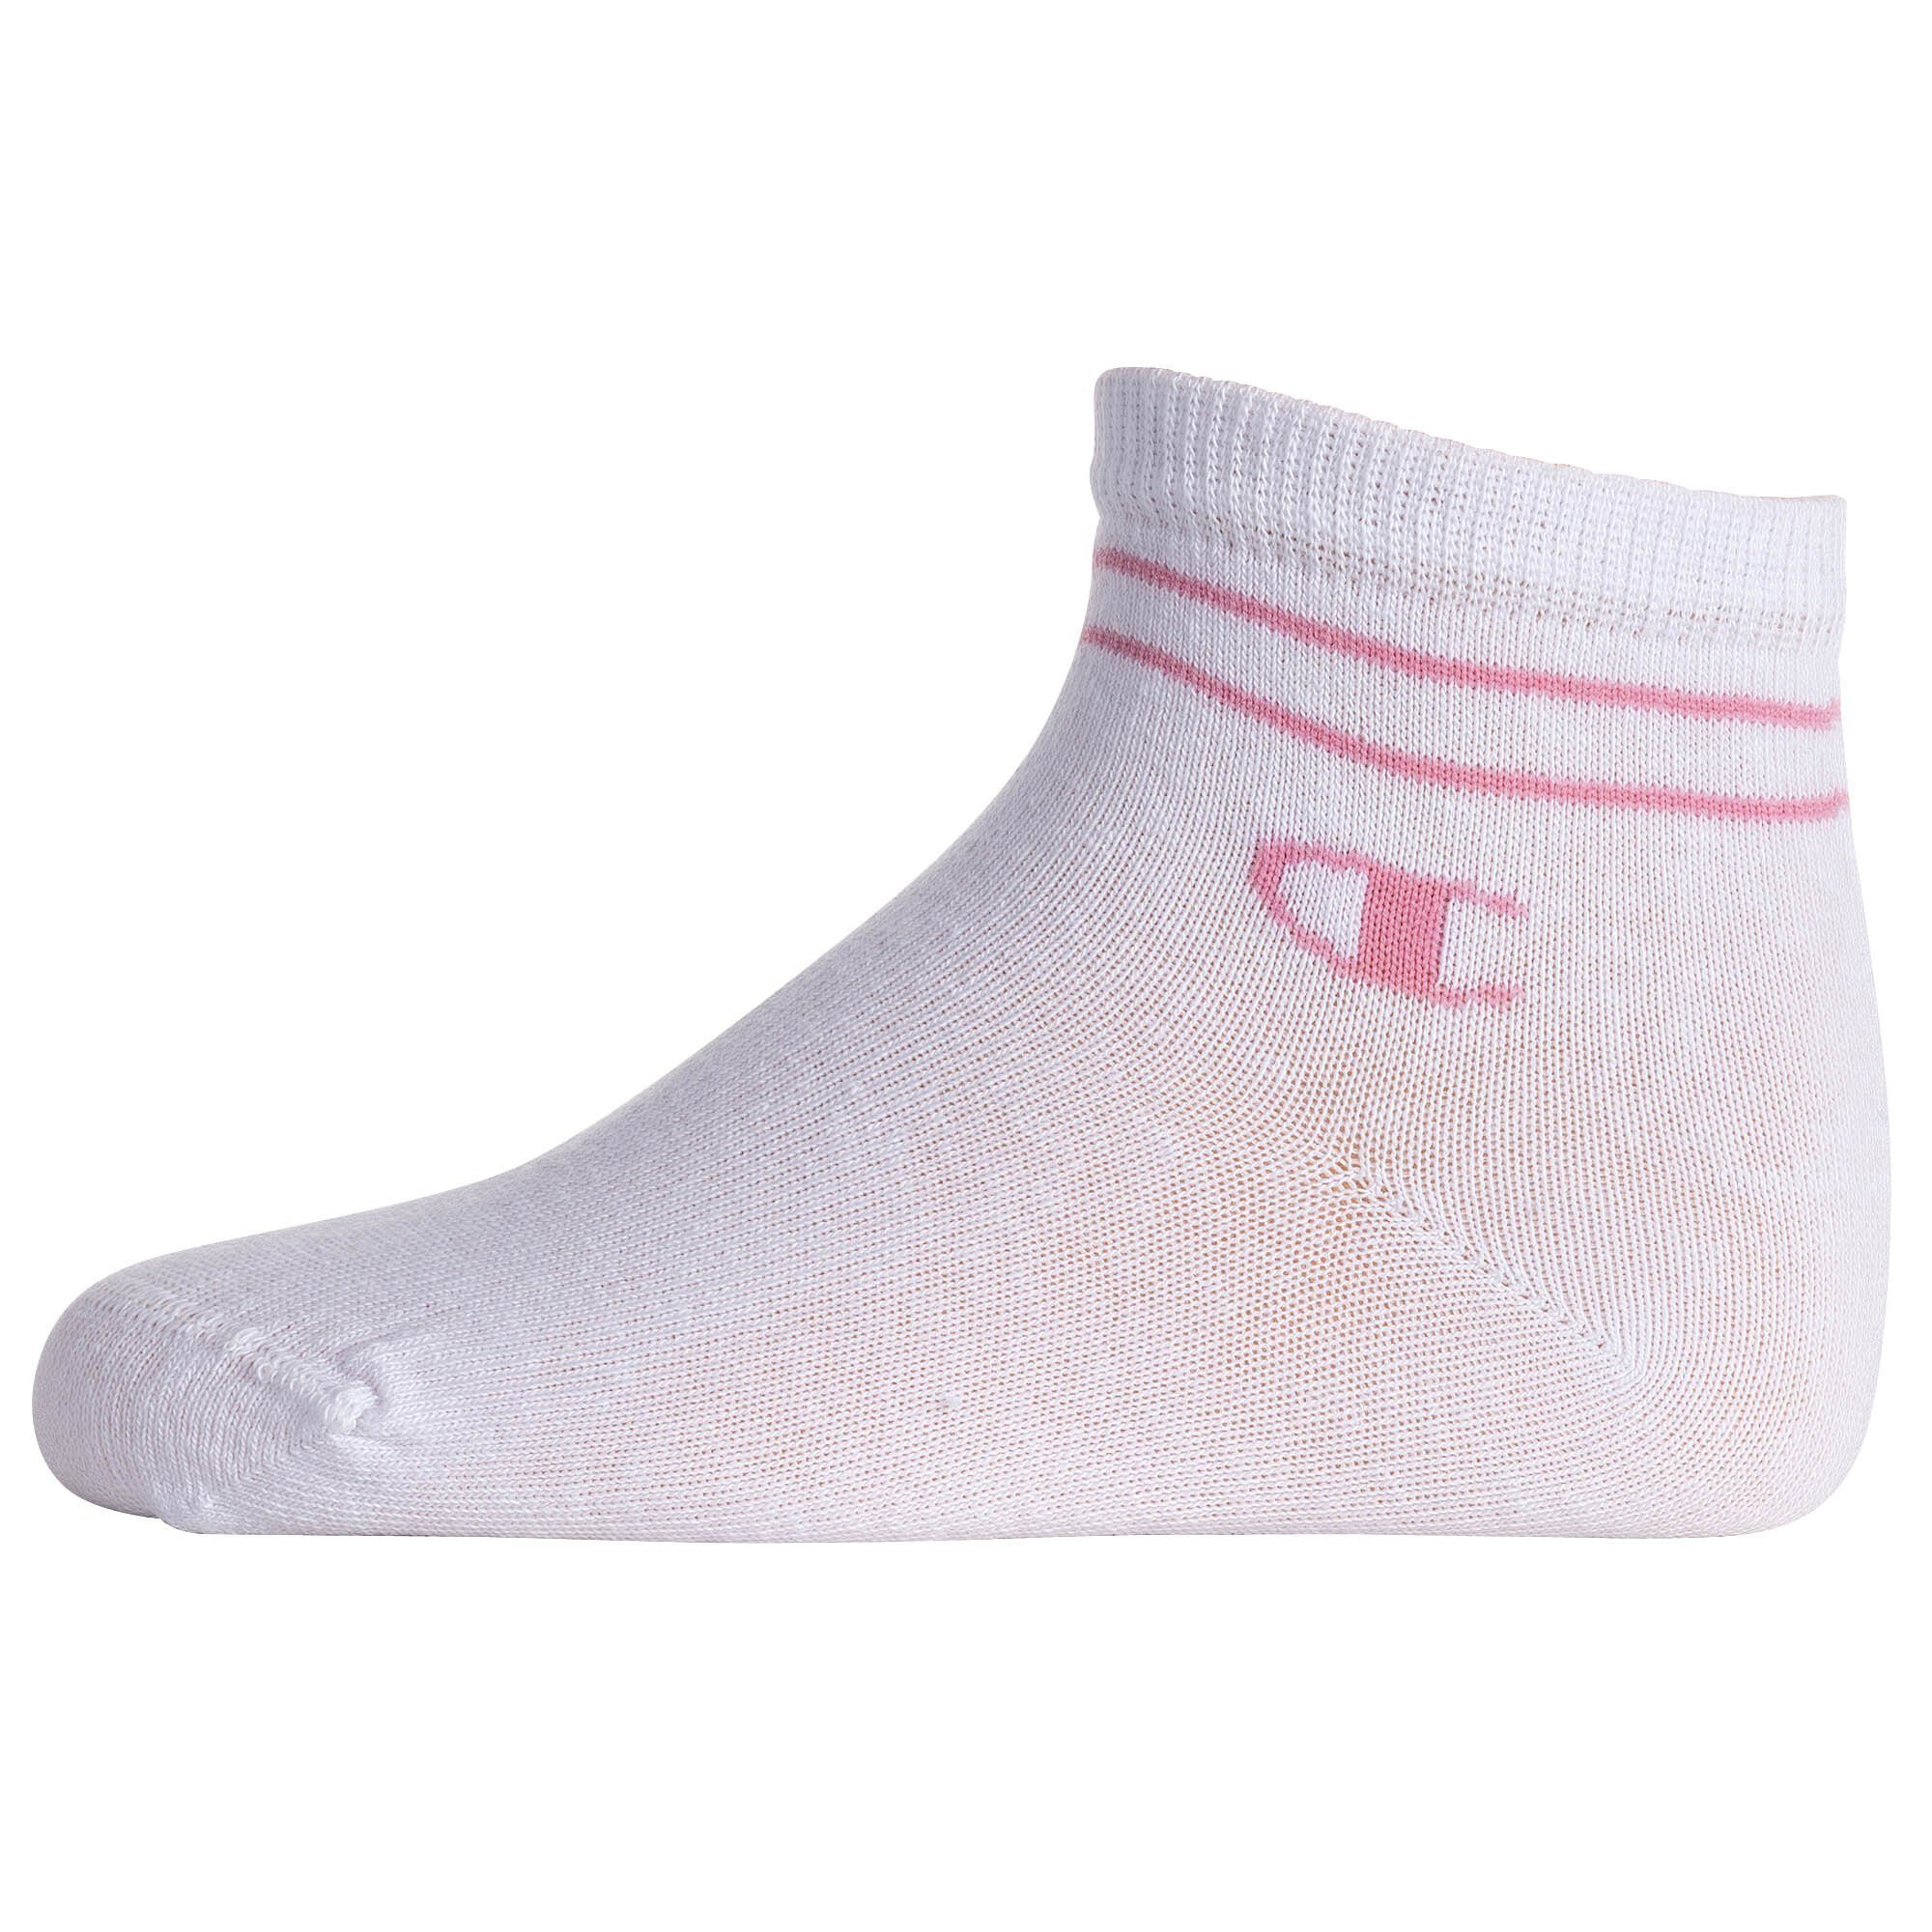 Champion Freizeitsocken Kinder Quarter - Mehrfarbig 2 Socken Paar Socken, 7 Unisex